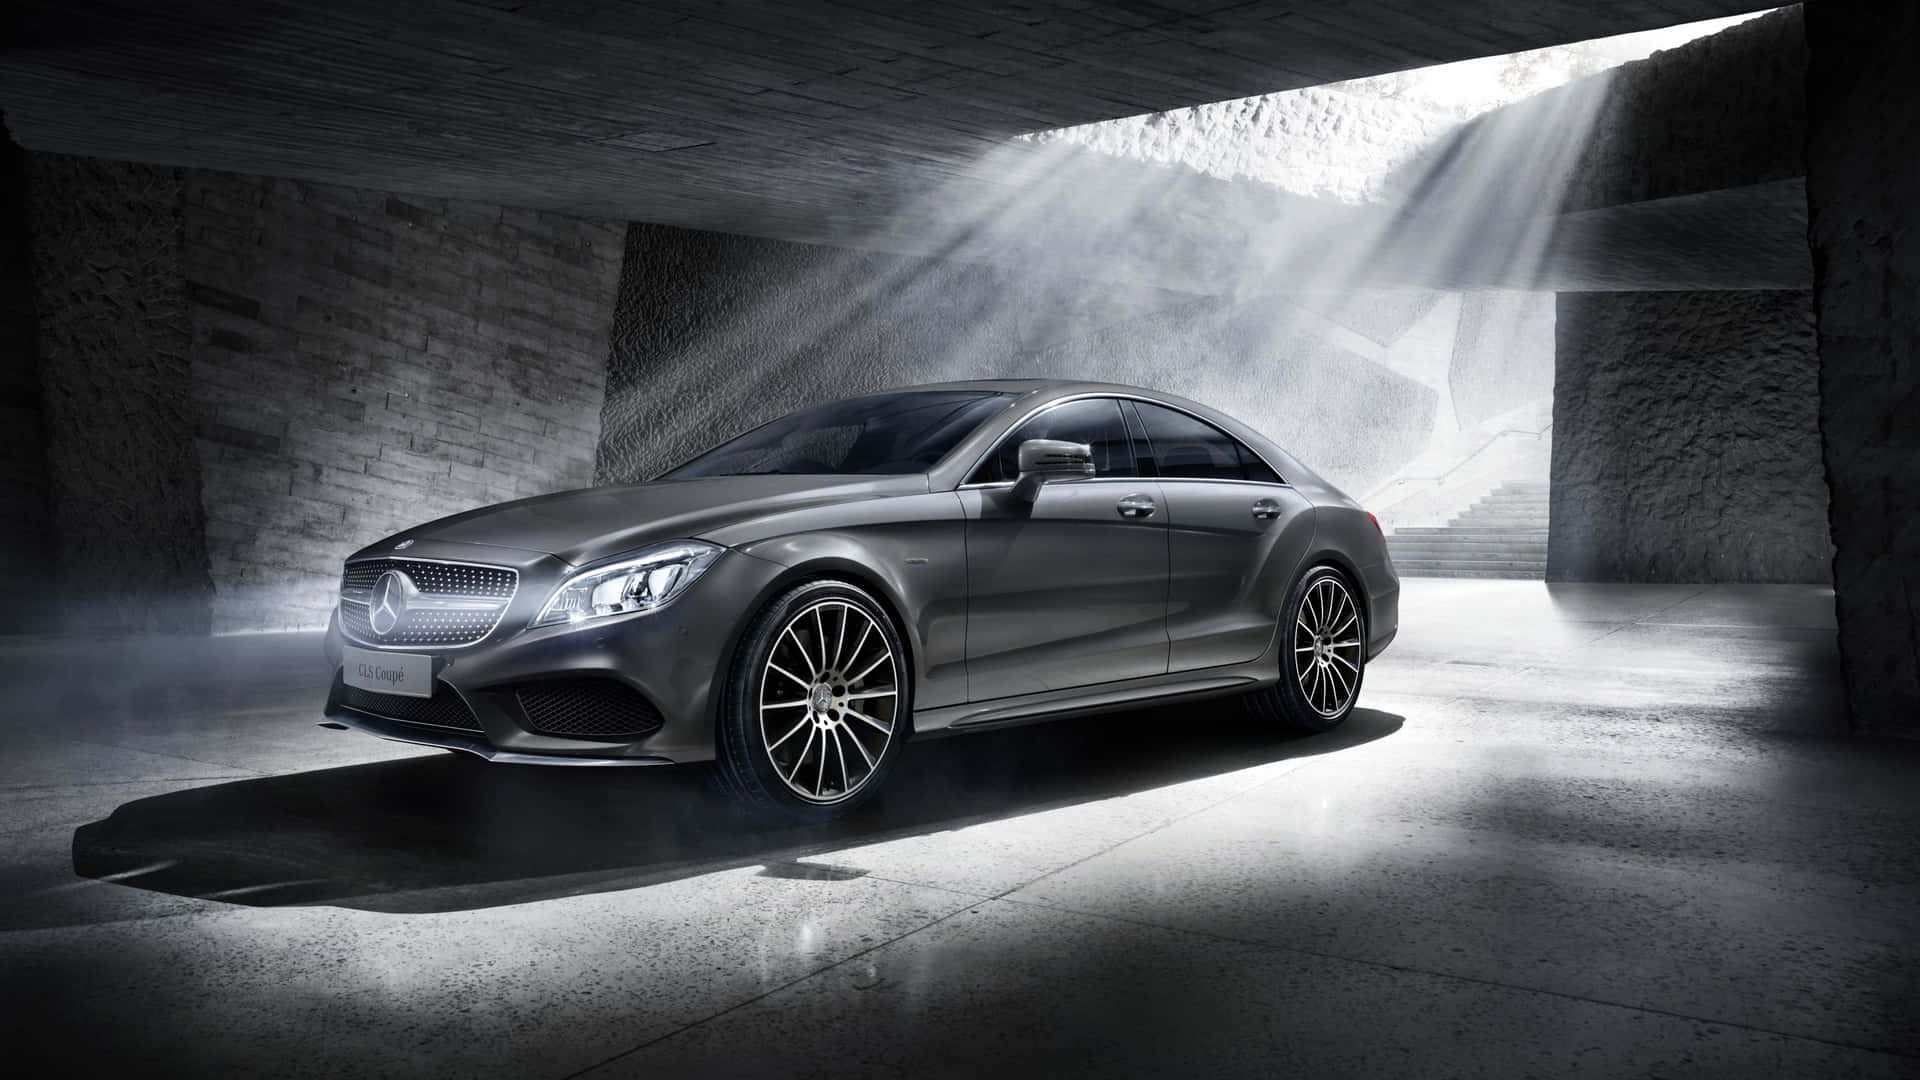 Stunning Mercedes Benz CLS-Class in Motion Wallpaper